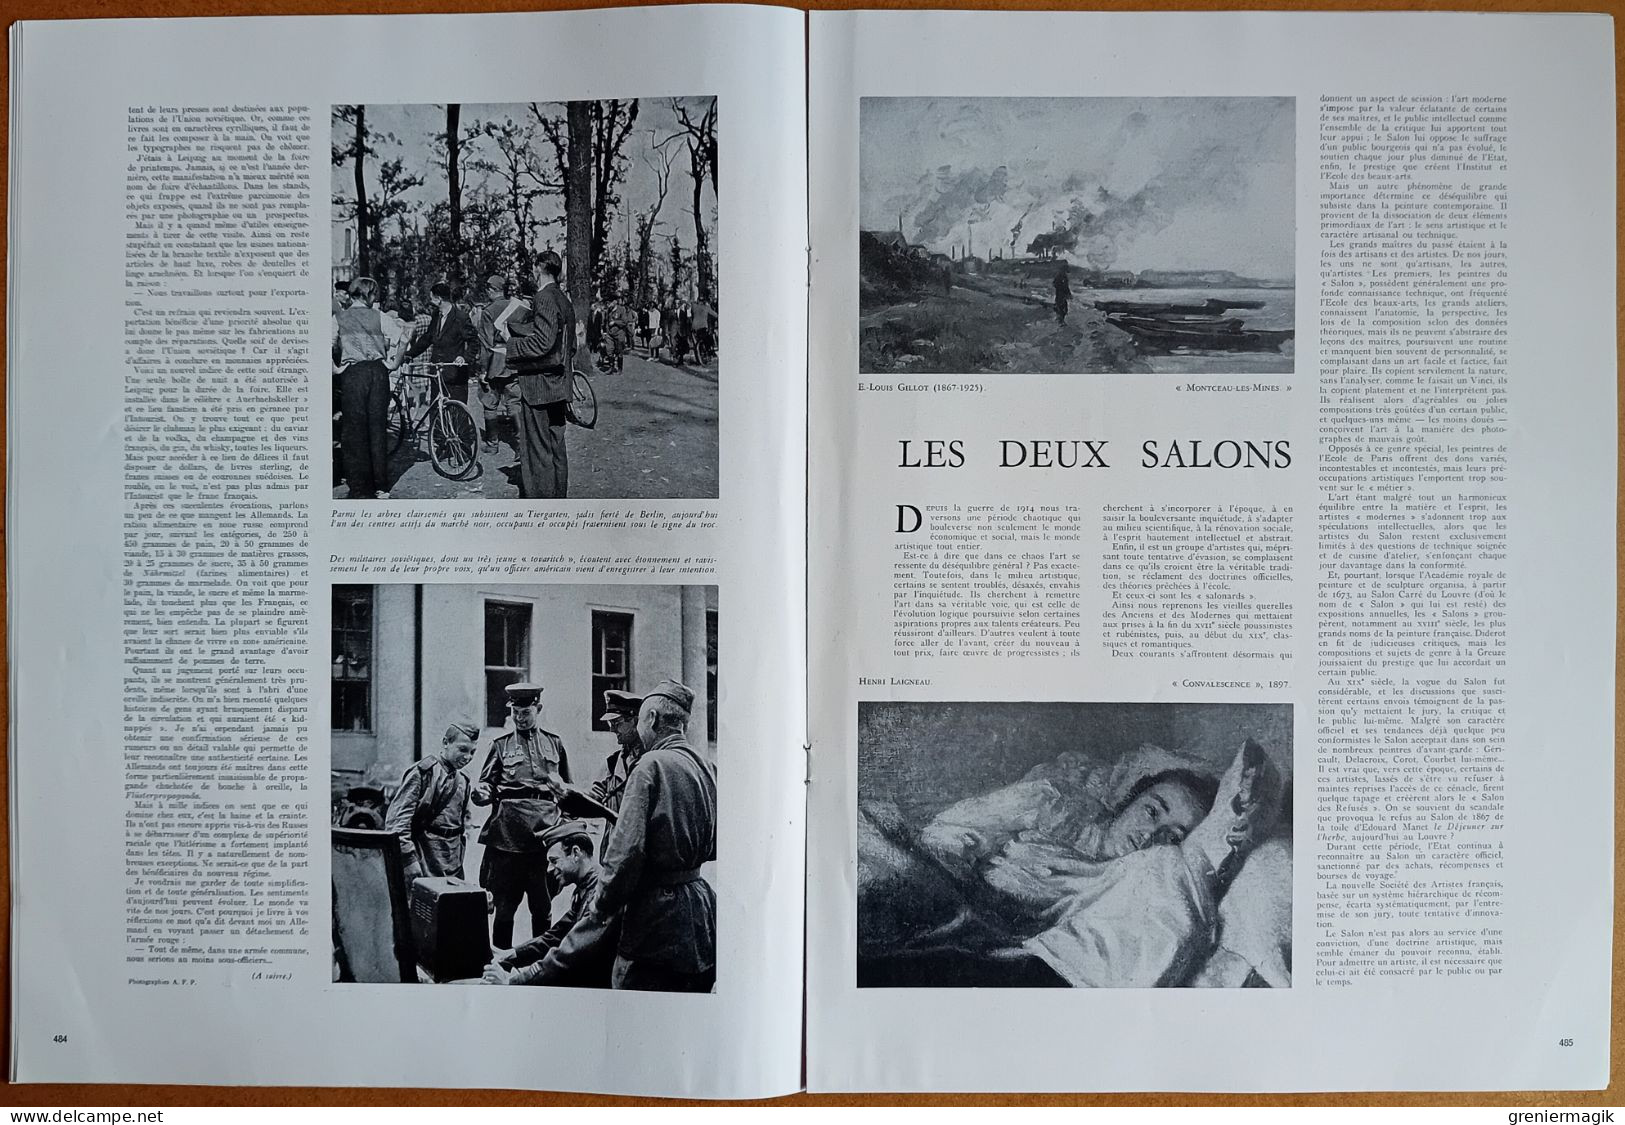 France Illustration N°85 17/05/1947 Churchill/Viet-minh Tonkin/Remaniement ministériel/Rideau de fer Berlin/Beauvais